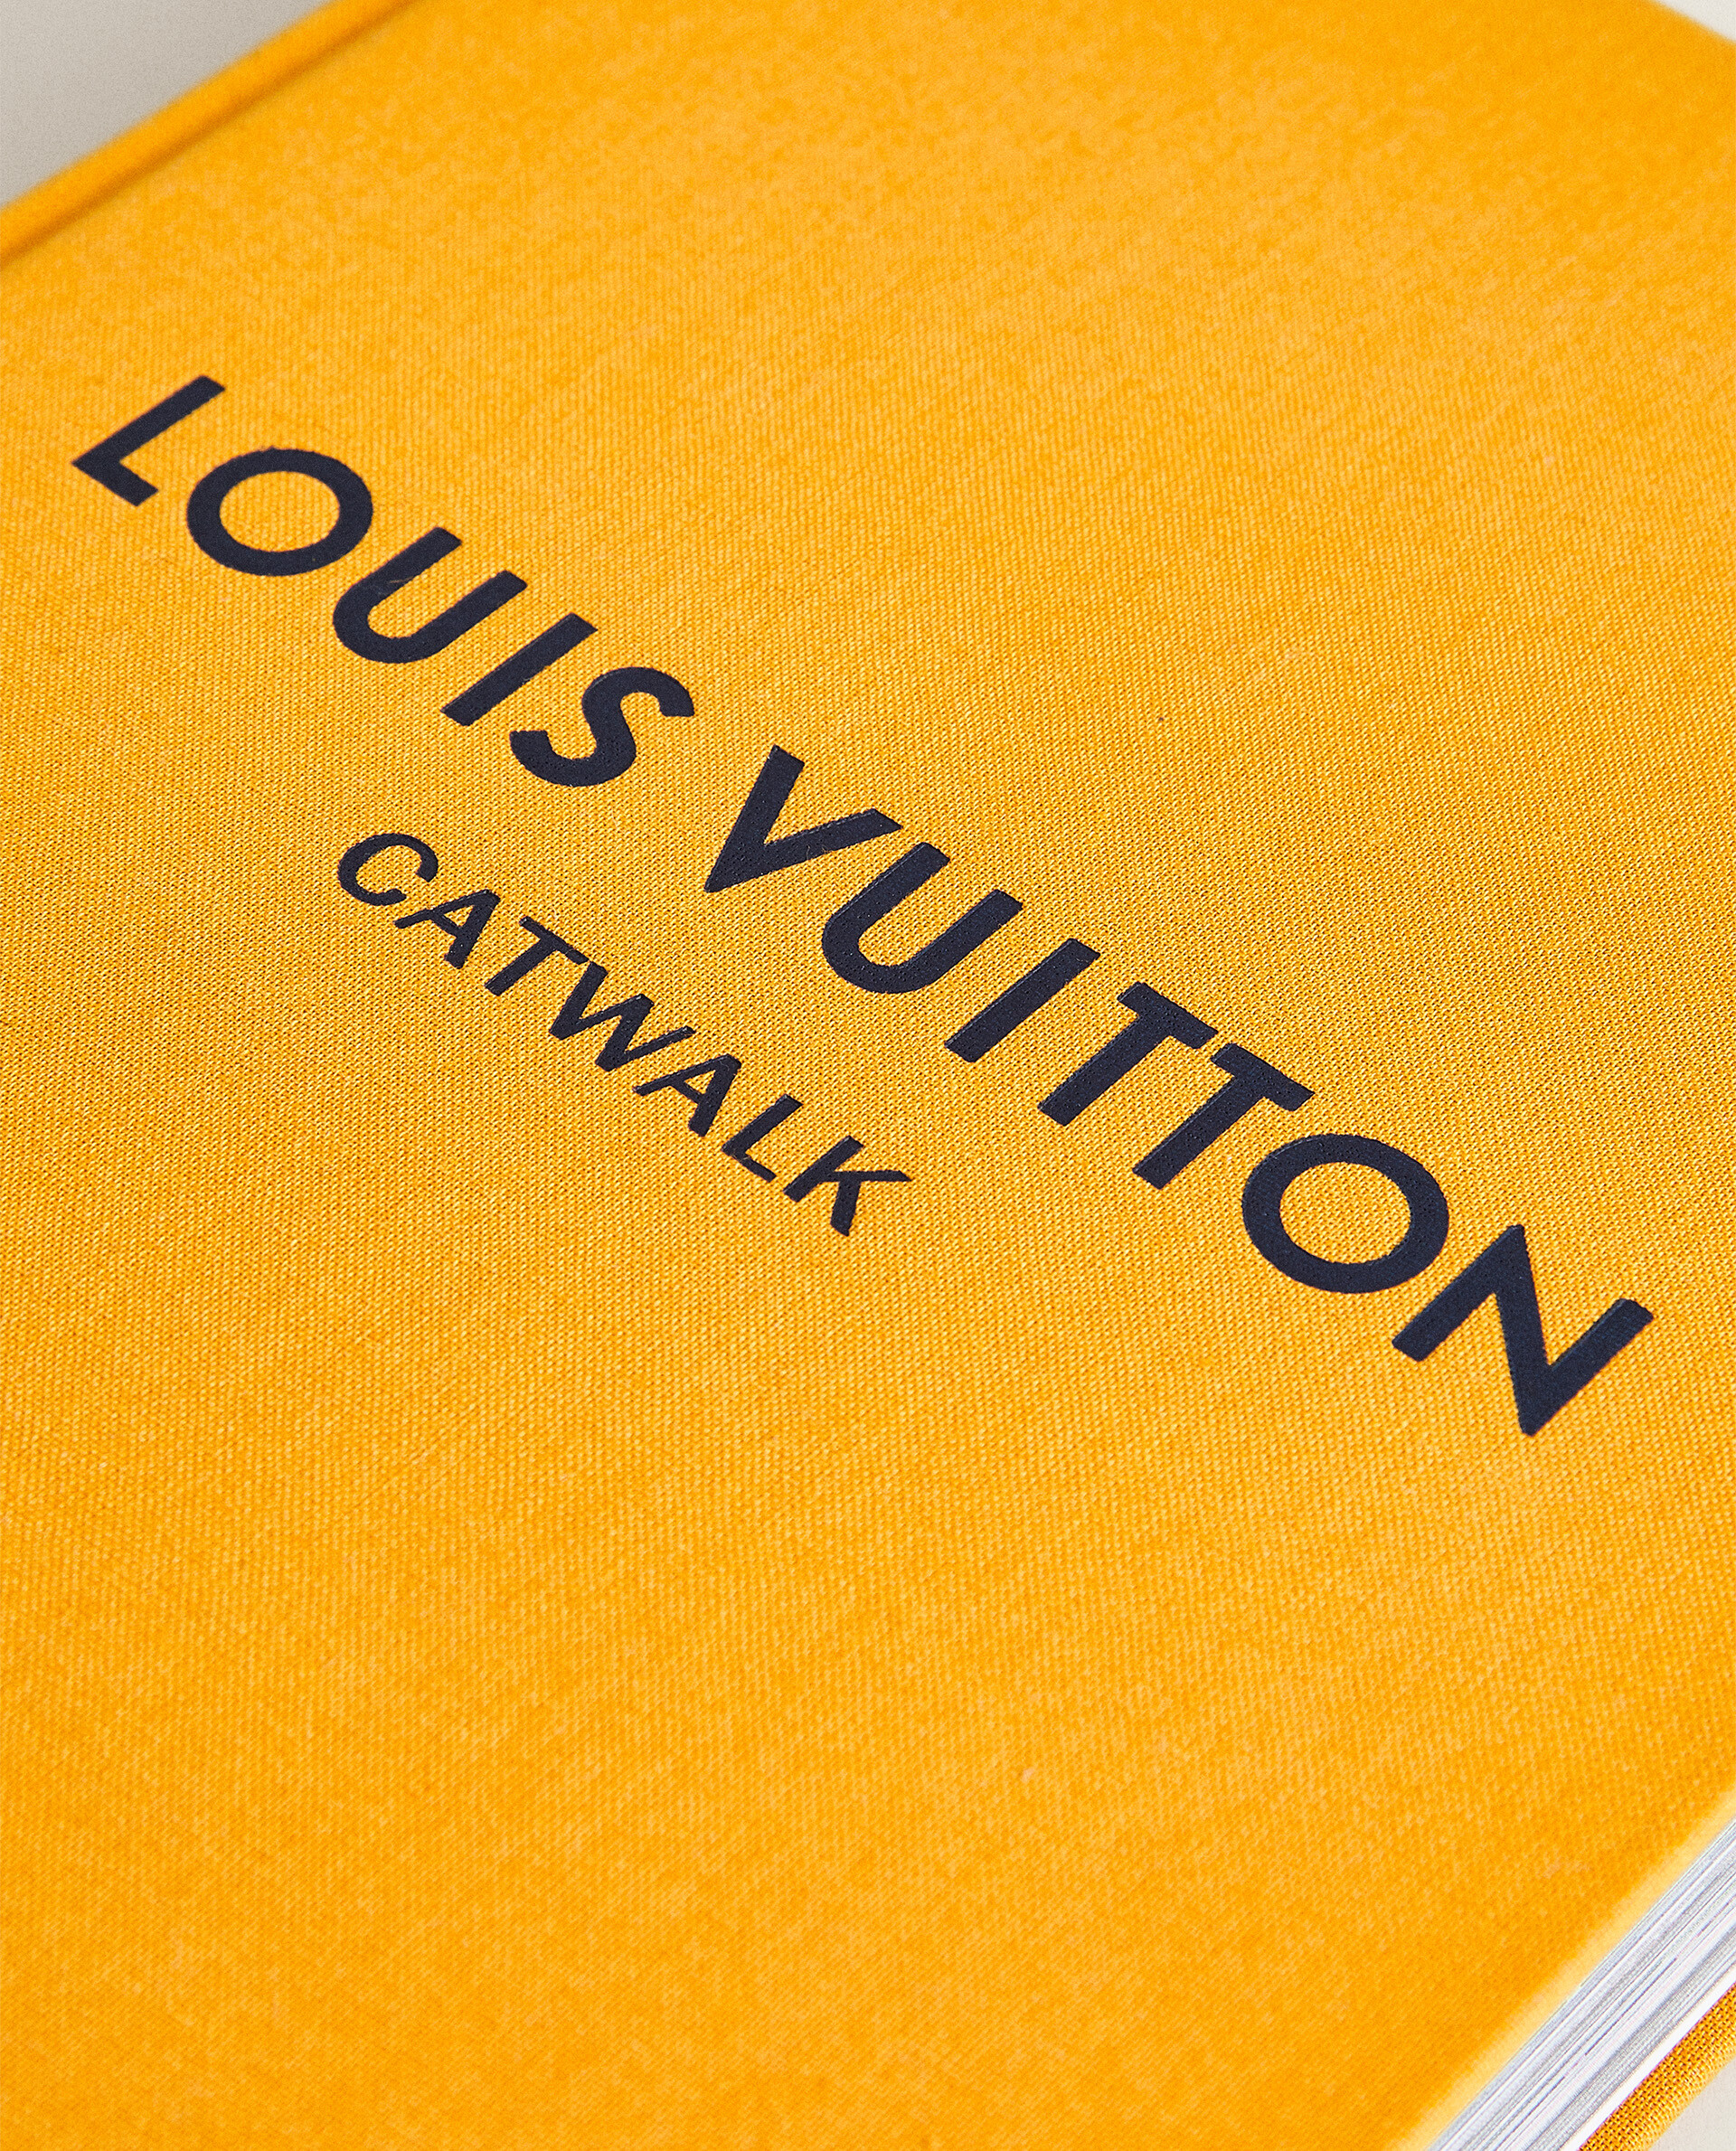 Livre catwalk Vuitton